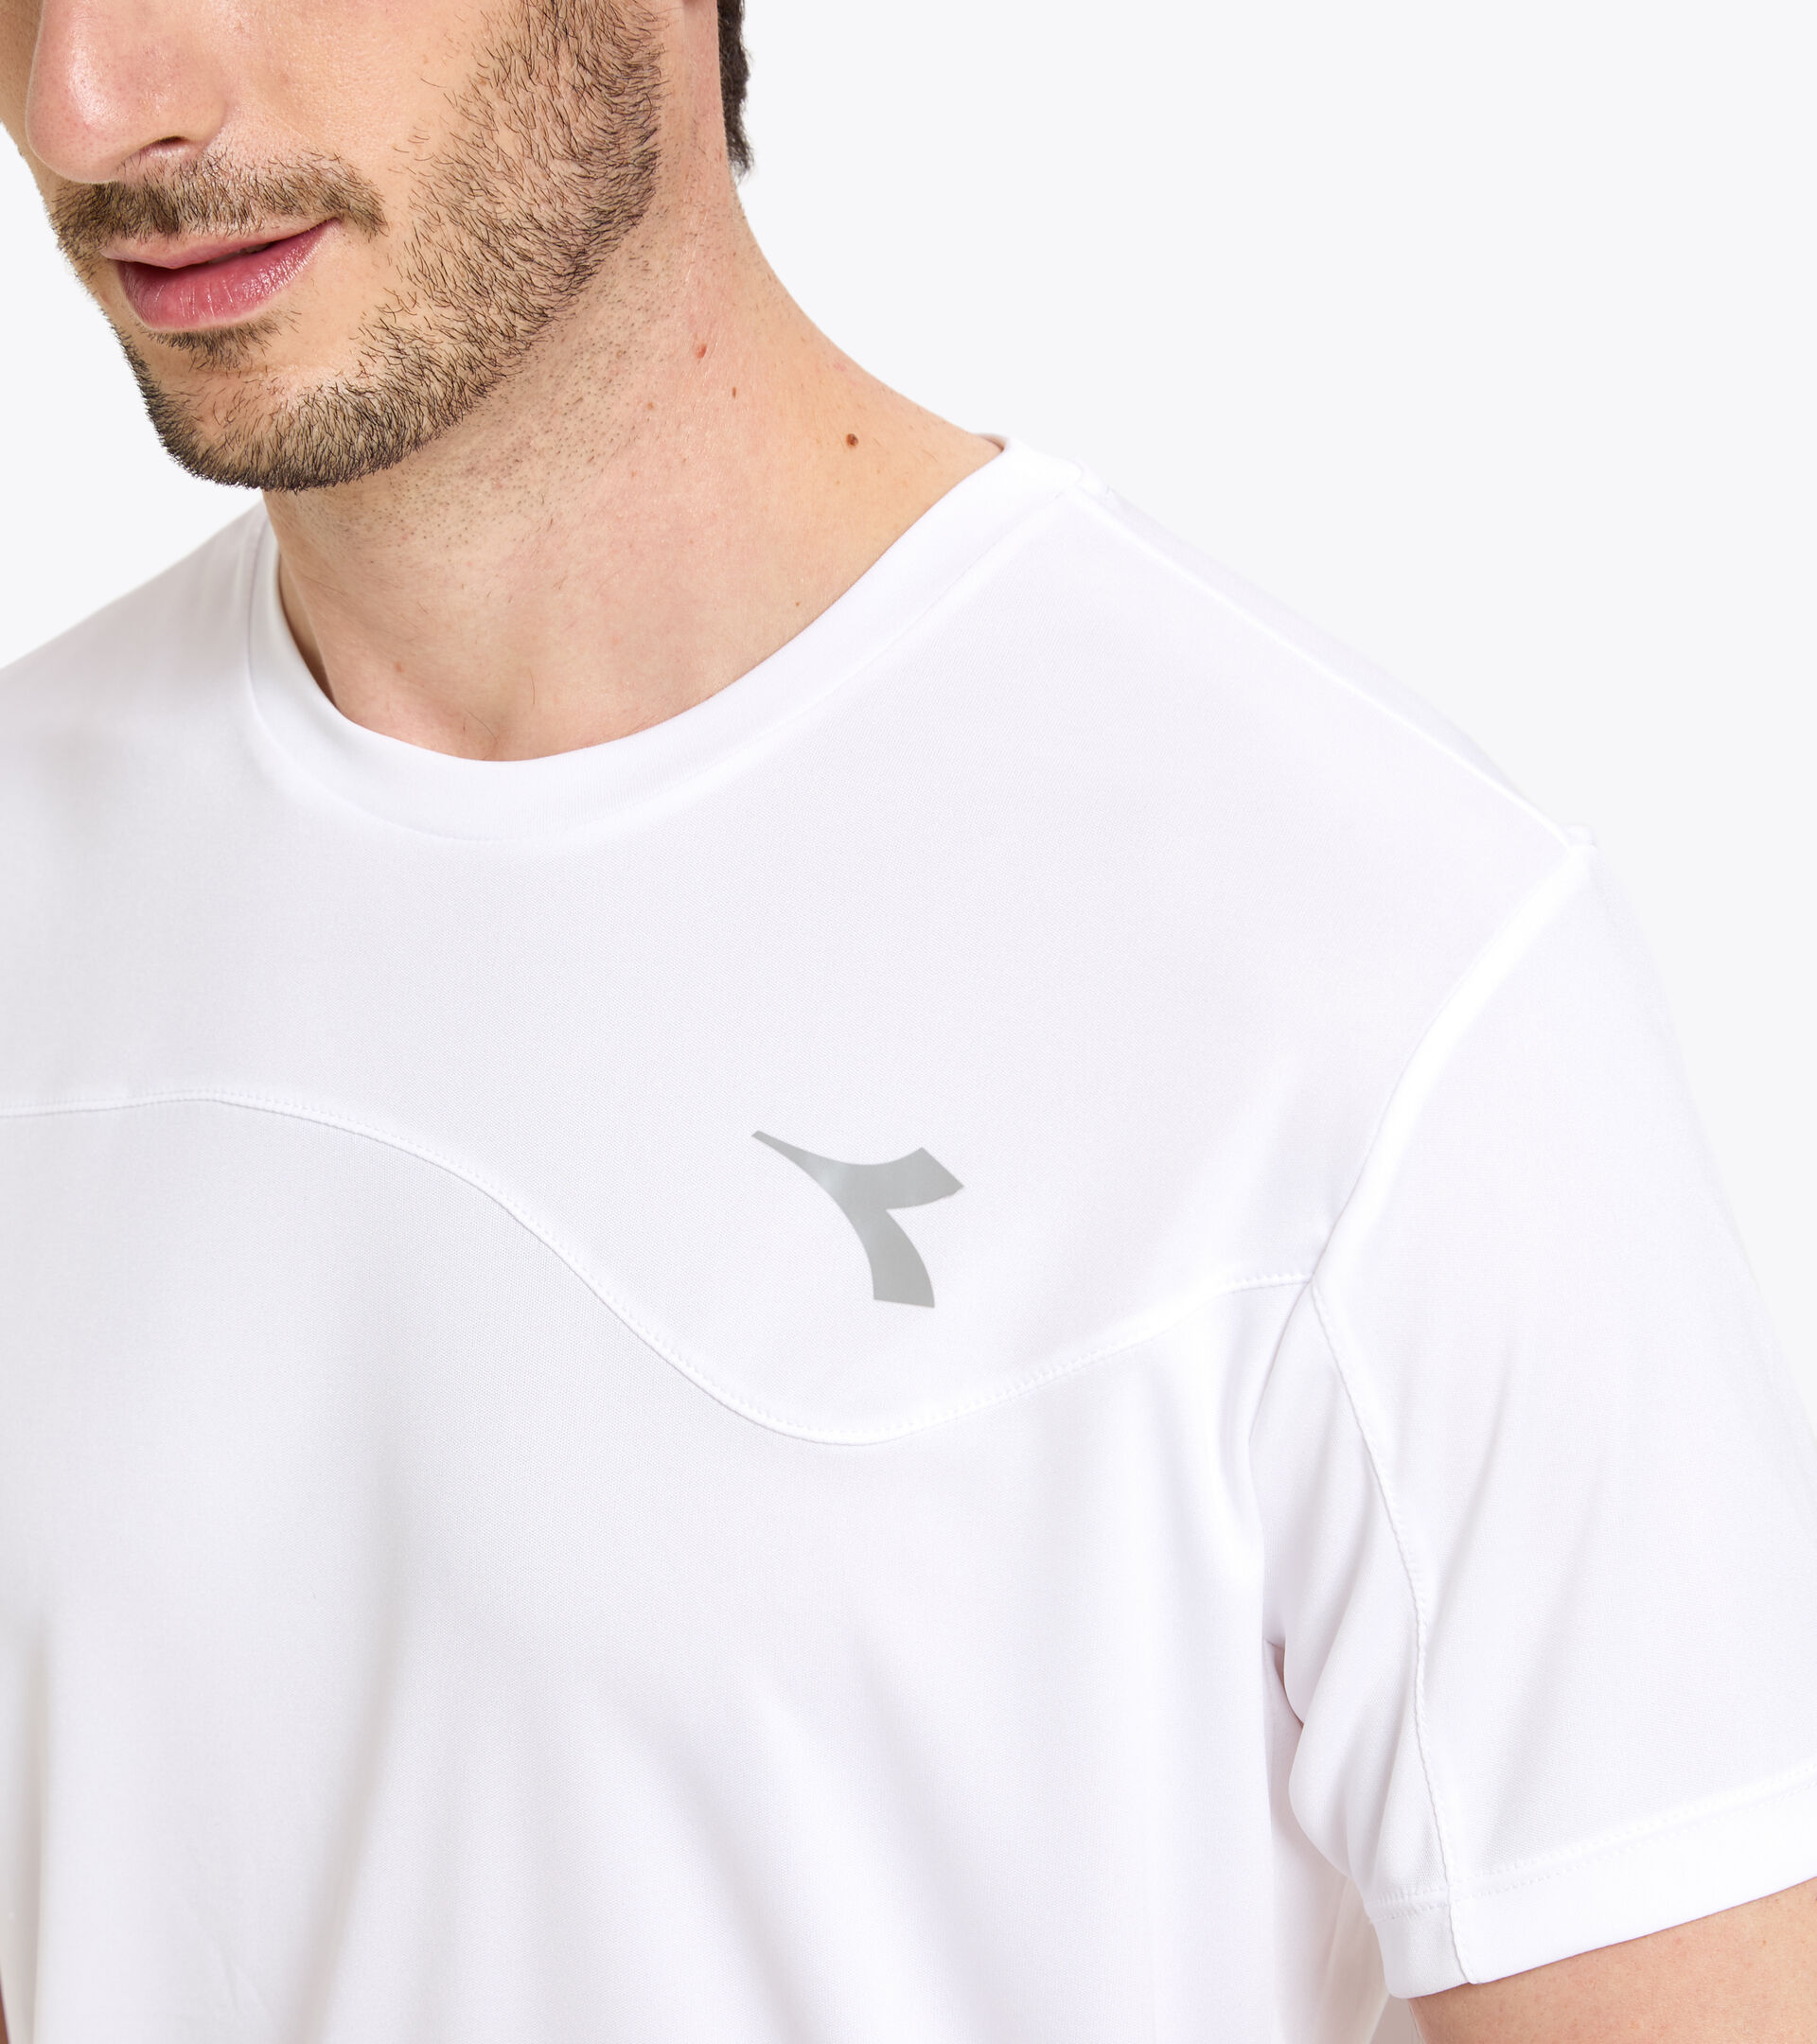 Tennis T-shirt - Men T-SHIRT TEAM OPTICAL WHITE - Diadora